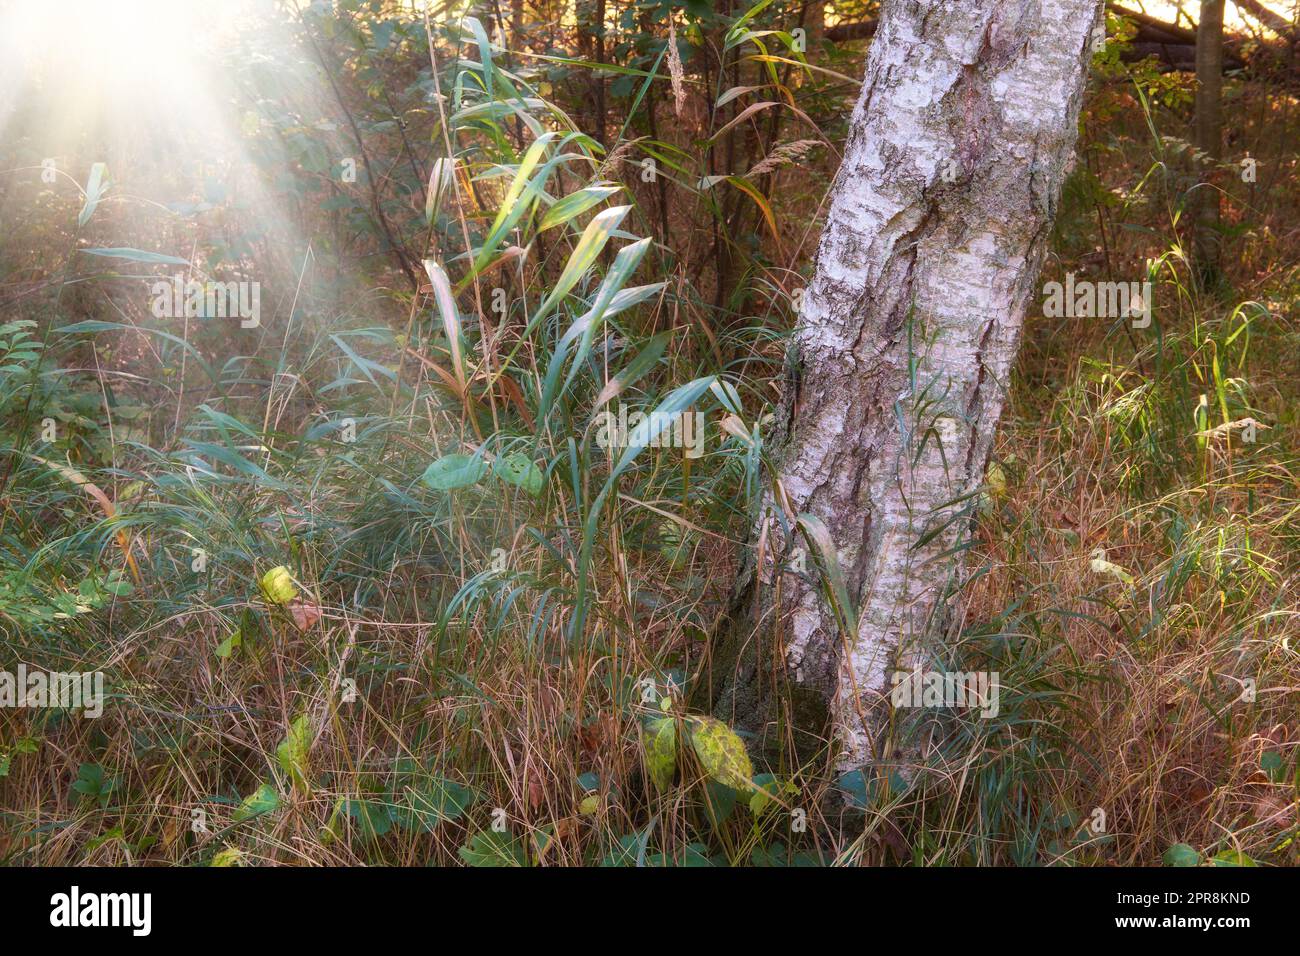 Malerischer Blick auf einen Eukalyptusbaum und Unkraut, die in ruhigen Wäldern bei Sonnenlicht in Norwegen wachsen. Grüner immergrüner Wald in abgelegener wilder Landschaft. Umweltschutz in der Holzversorgung Stockfoto